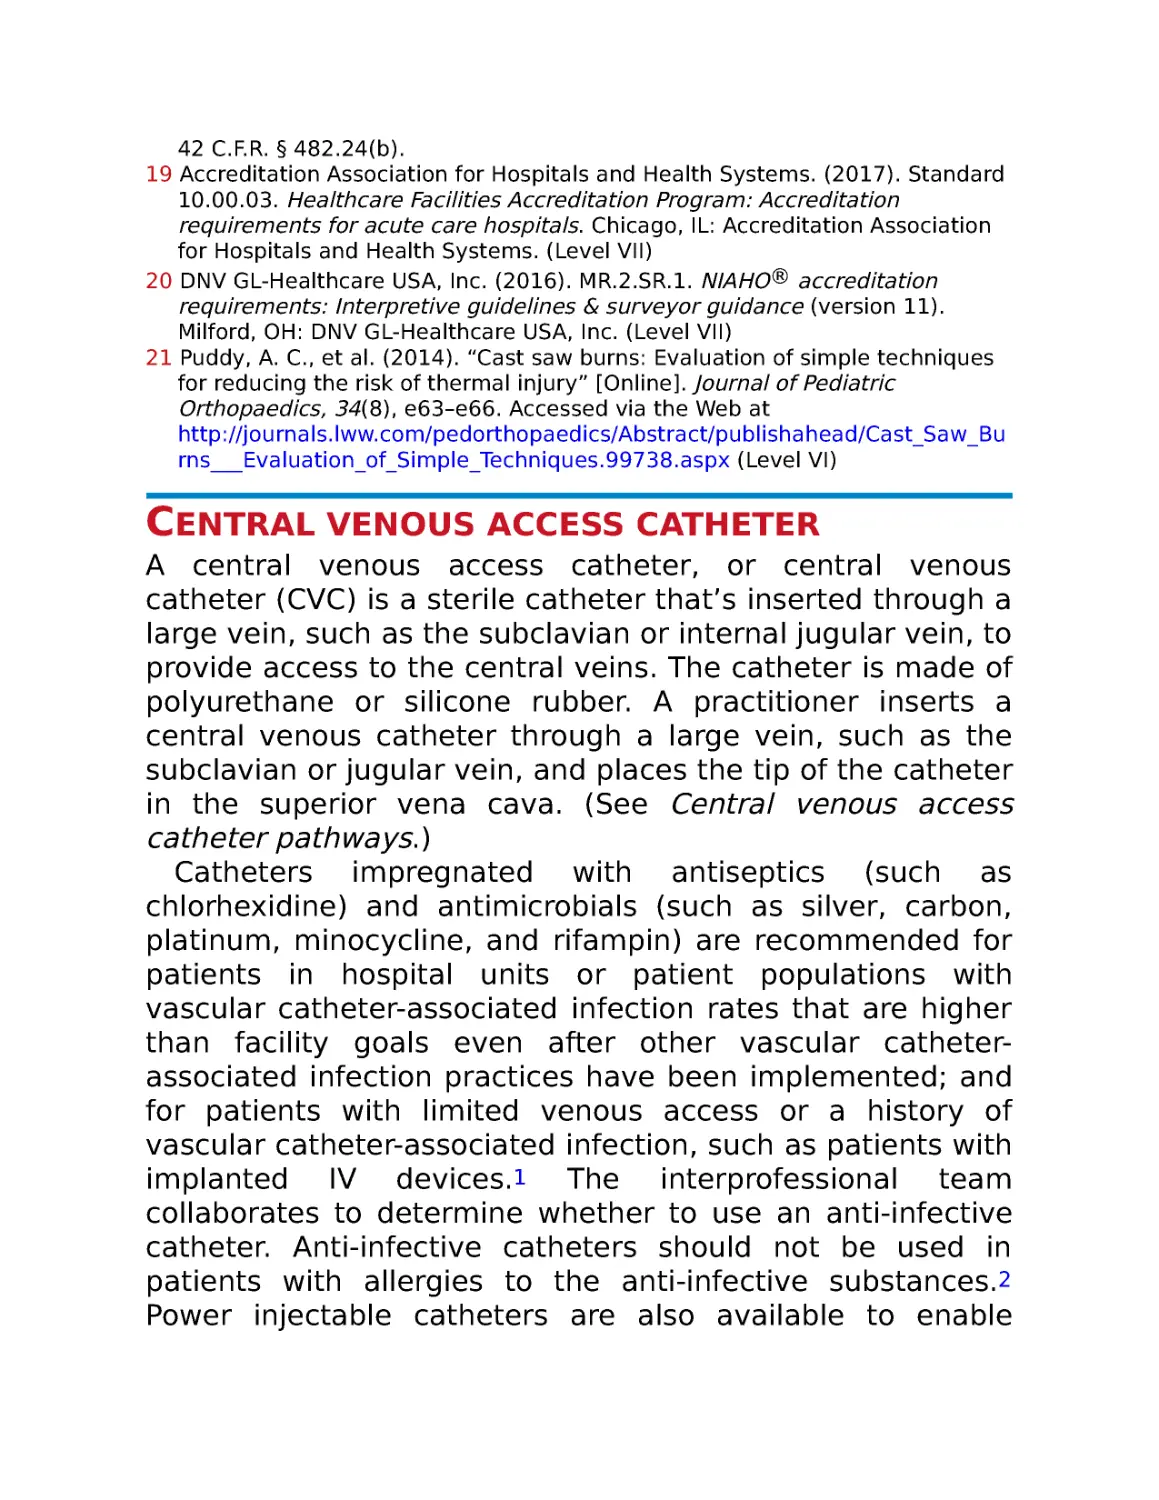 Central venous access catheter